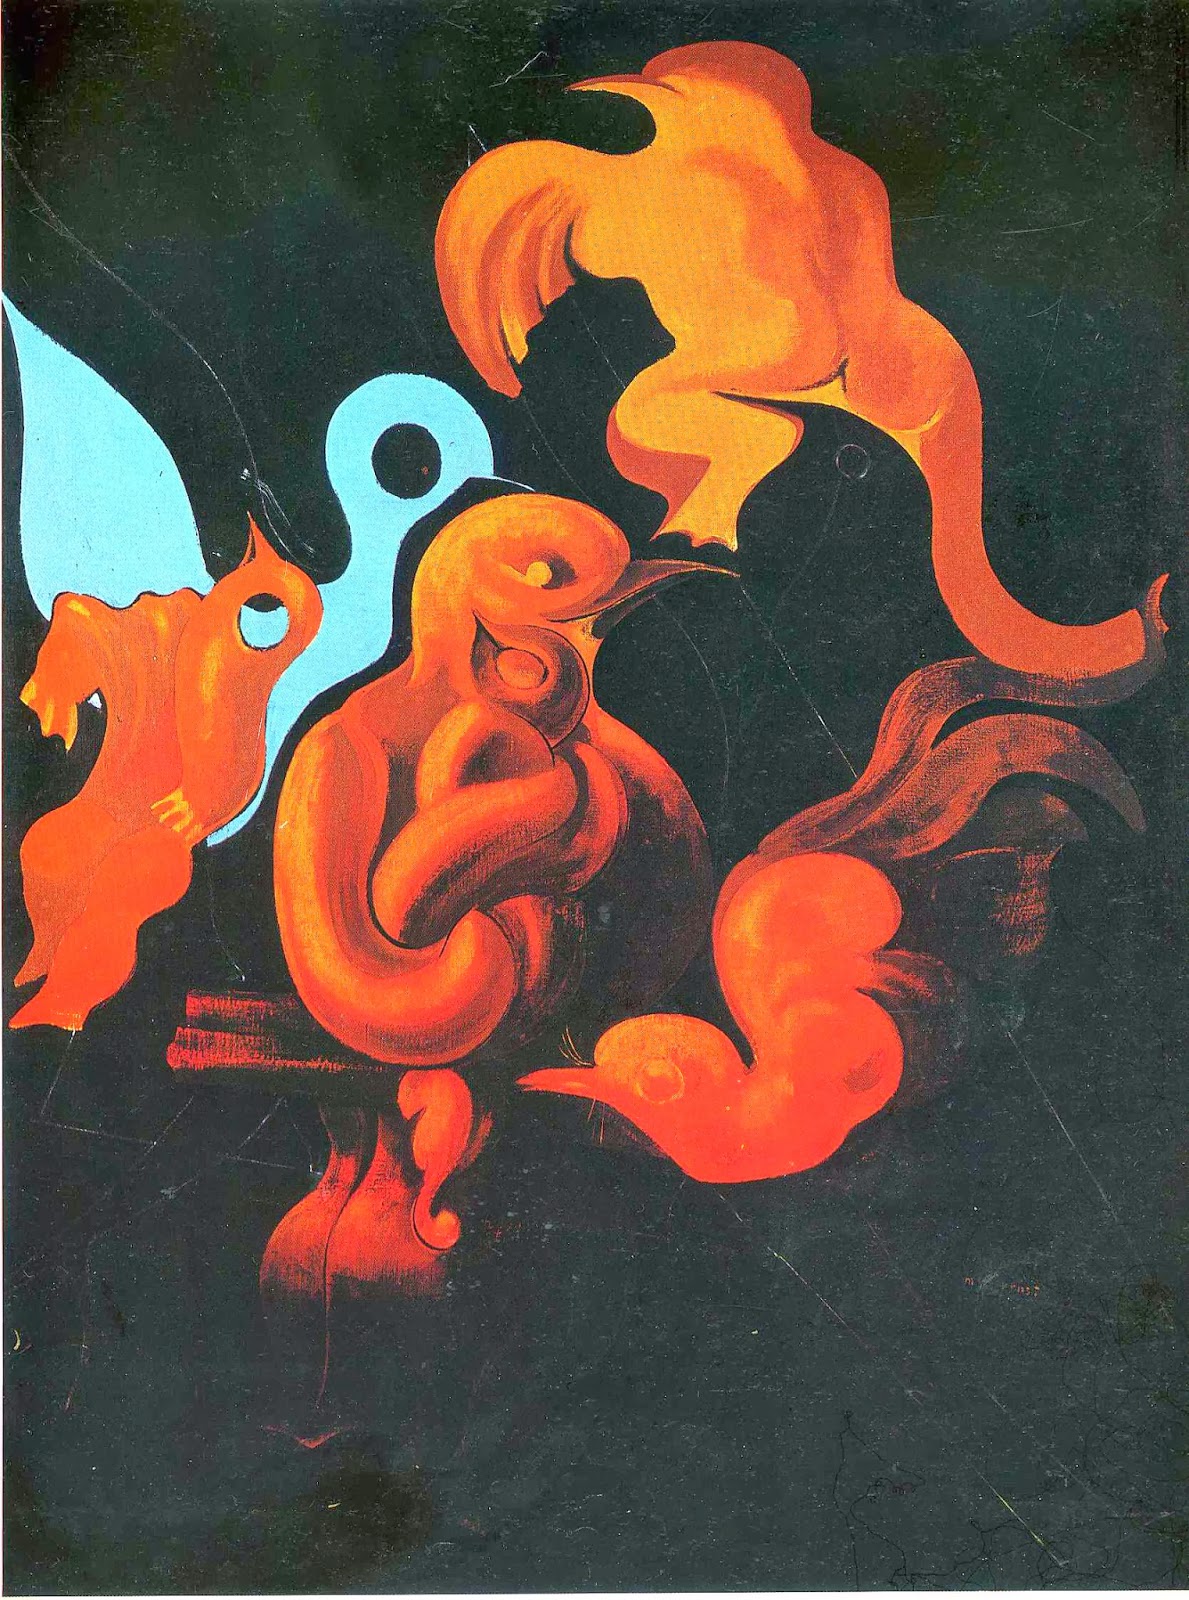 After Us Motherhood (Max Ernst, 1927)